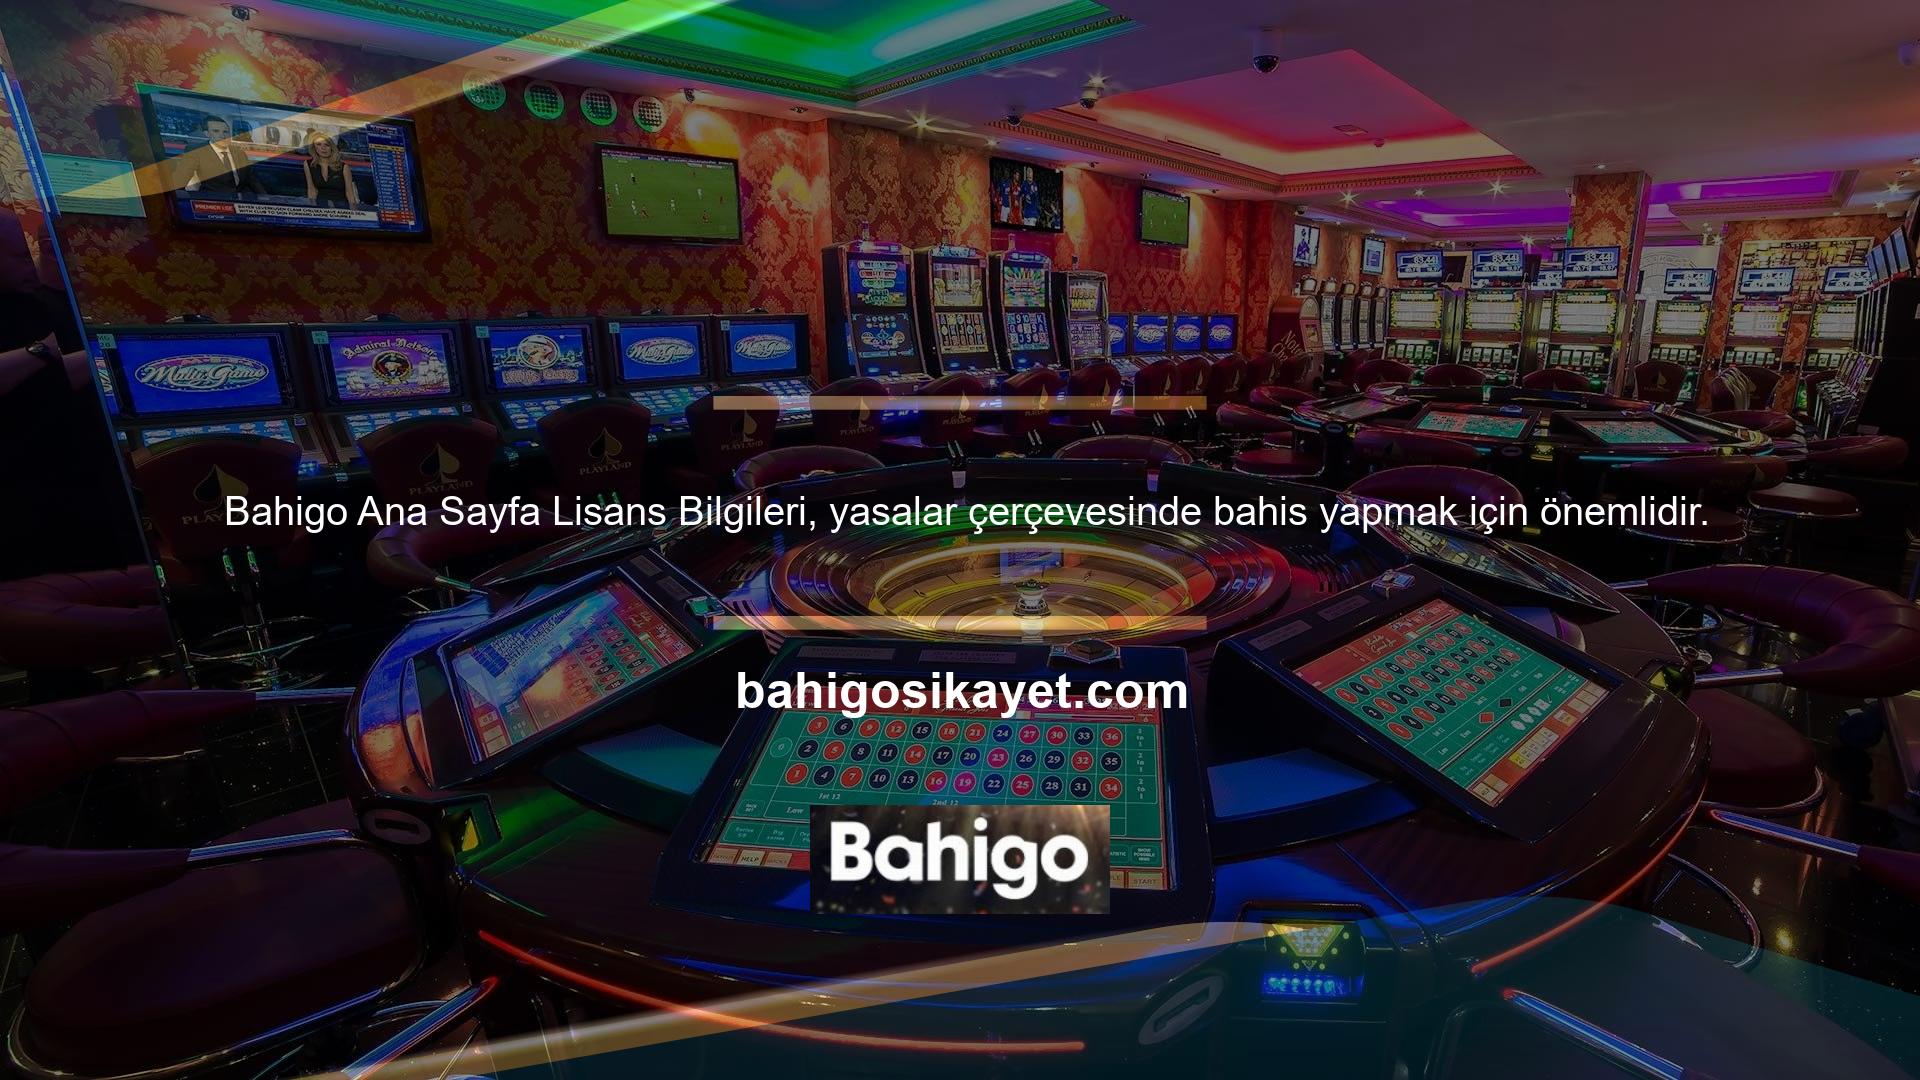 Bahigo lisans bilgileri sitenin alt kısmında bulunan ilgili bölümde kullanıcılara detaylı olarak sunulmaktadır